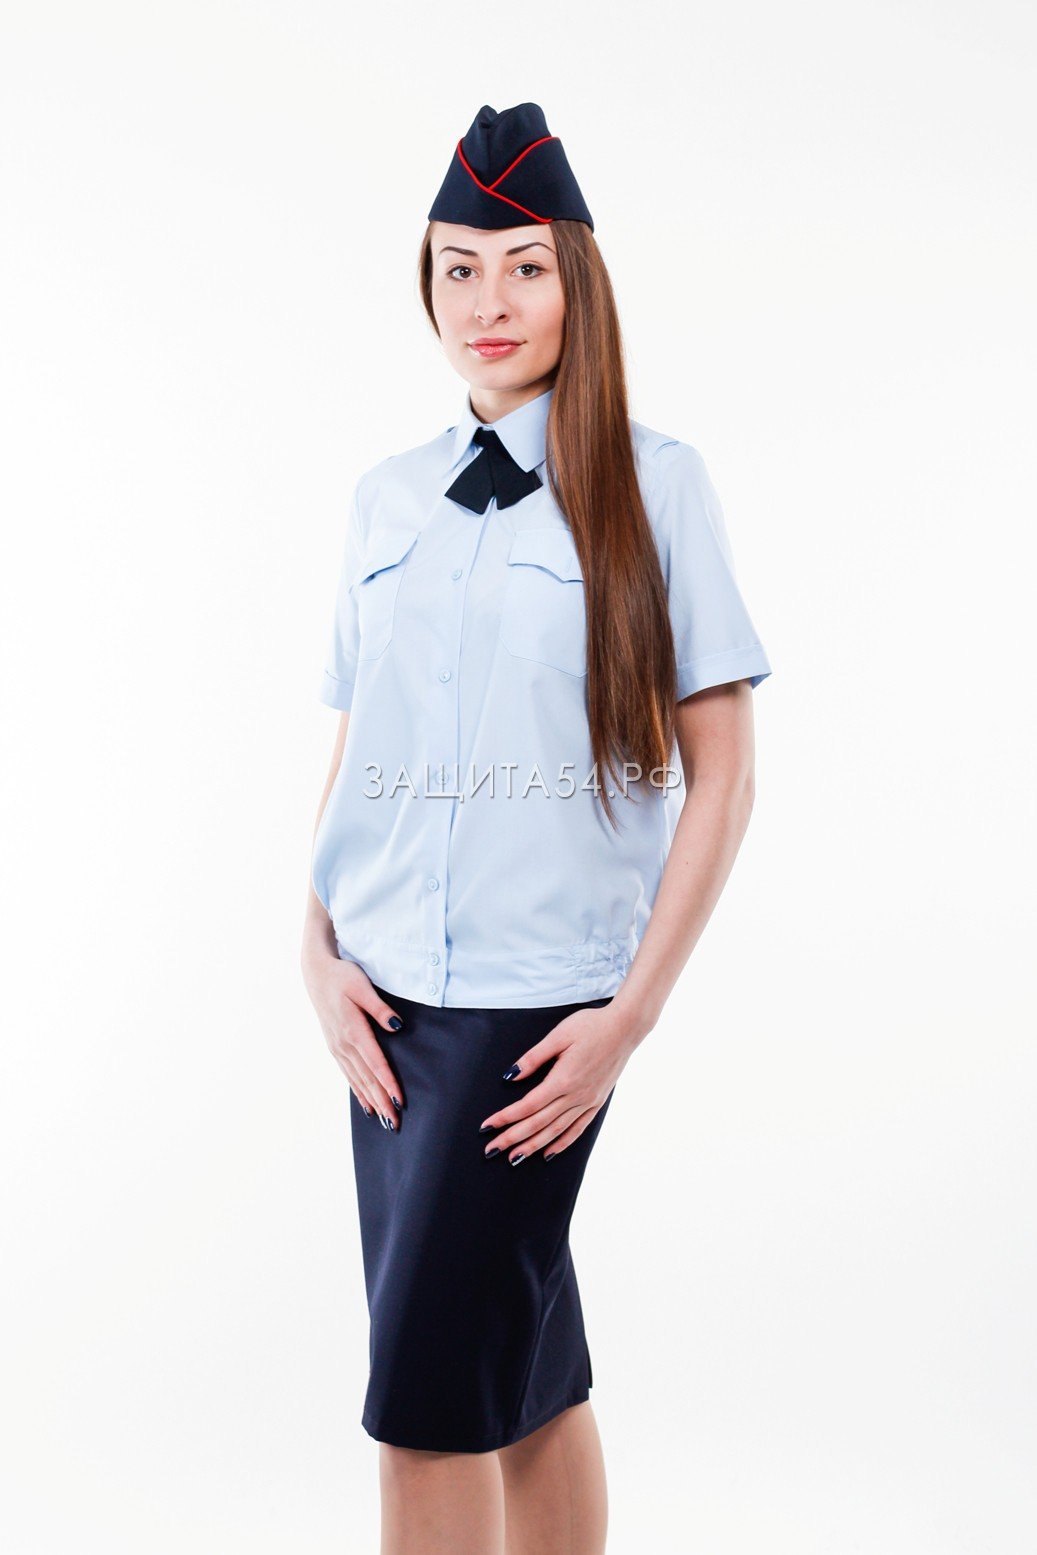 Женская летняя форма. Форма ФСИН женская рубашка с коротким рукавом. Софи Росси в полицейской форме. Рубашка полиция женская. Форменная рубашка полиции женская.